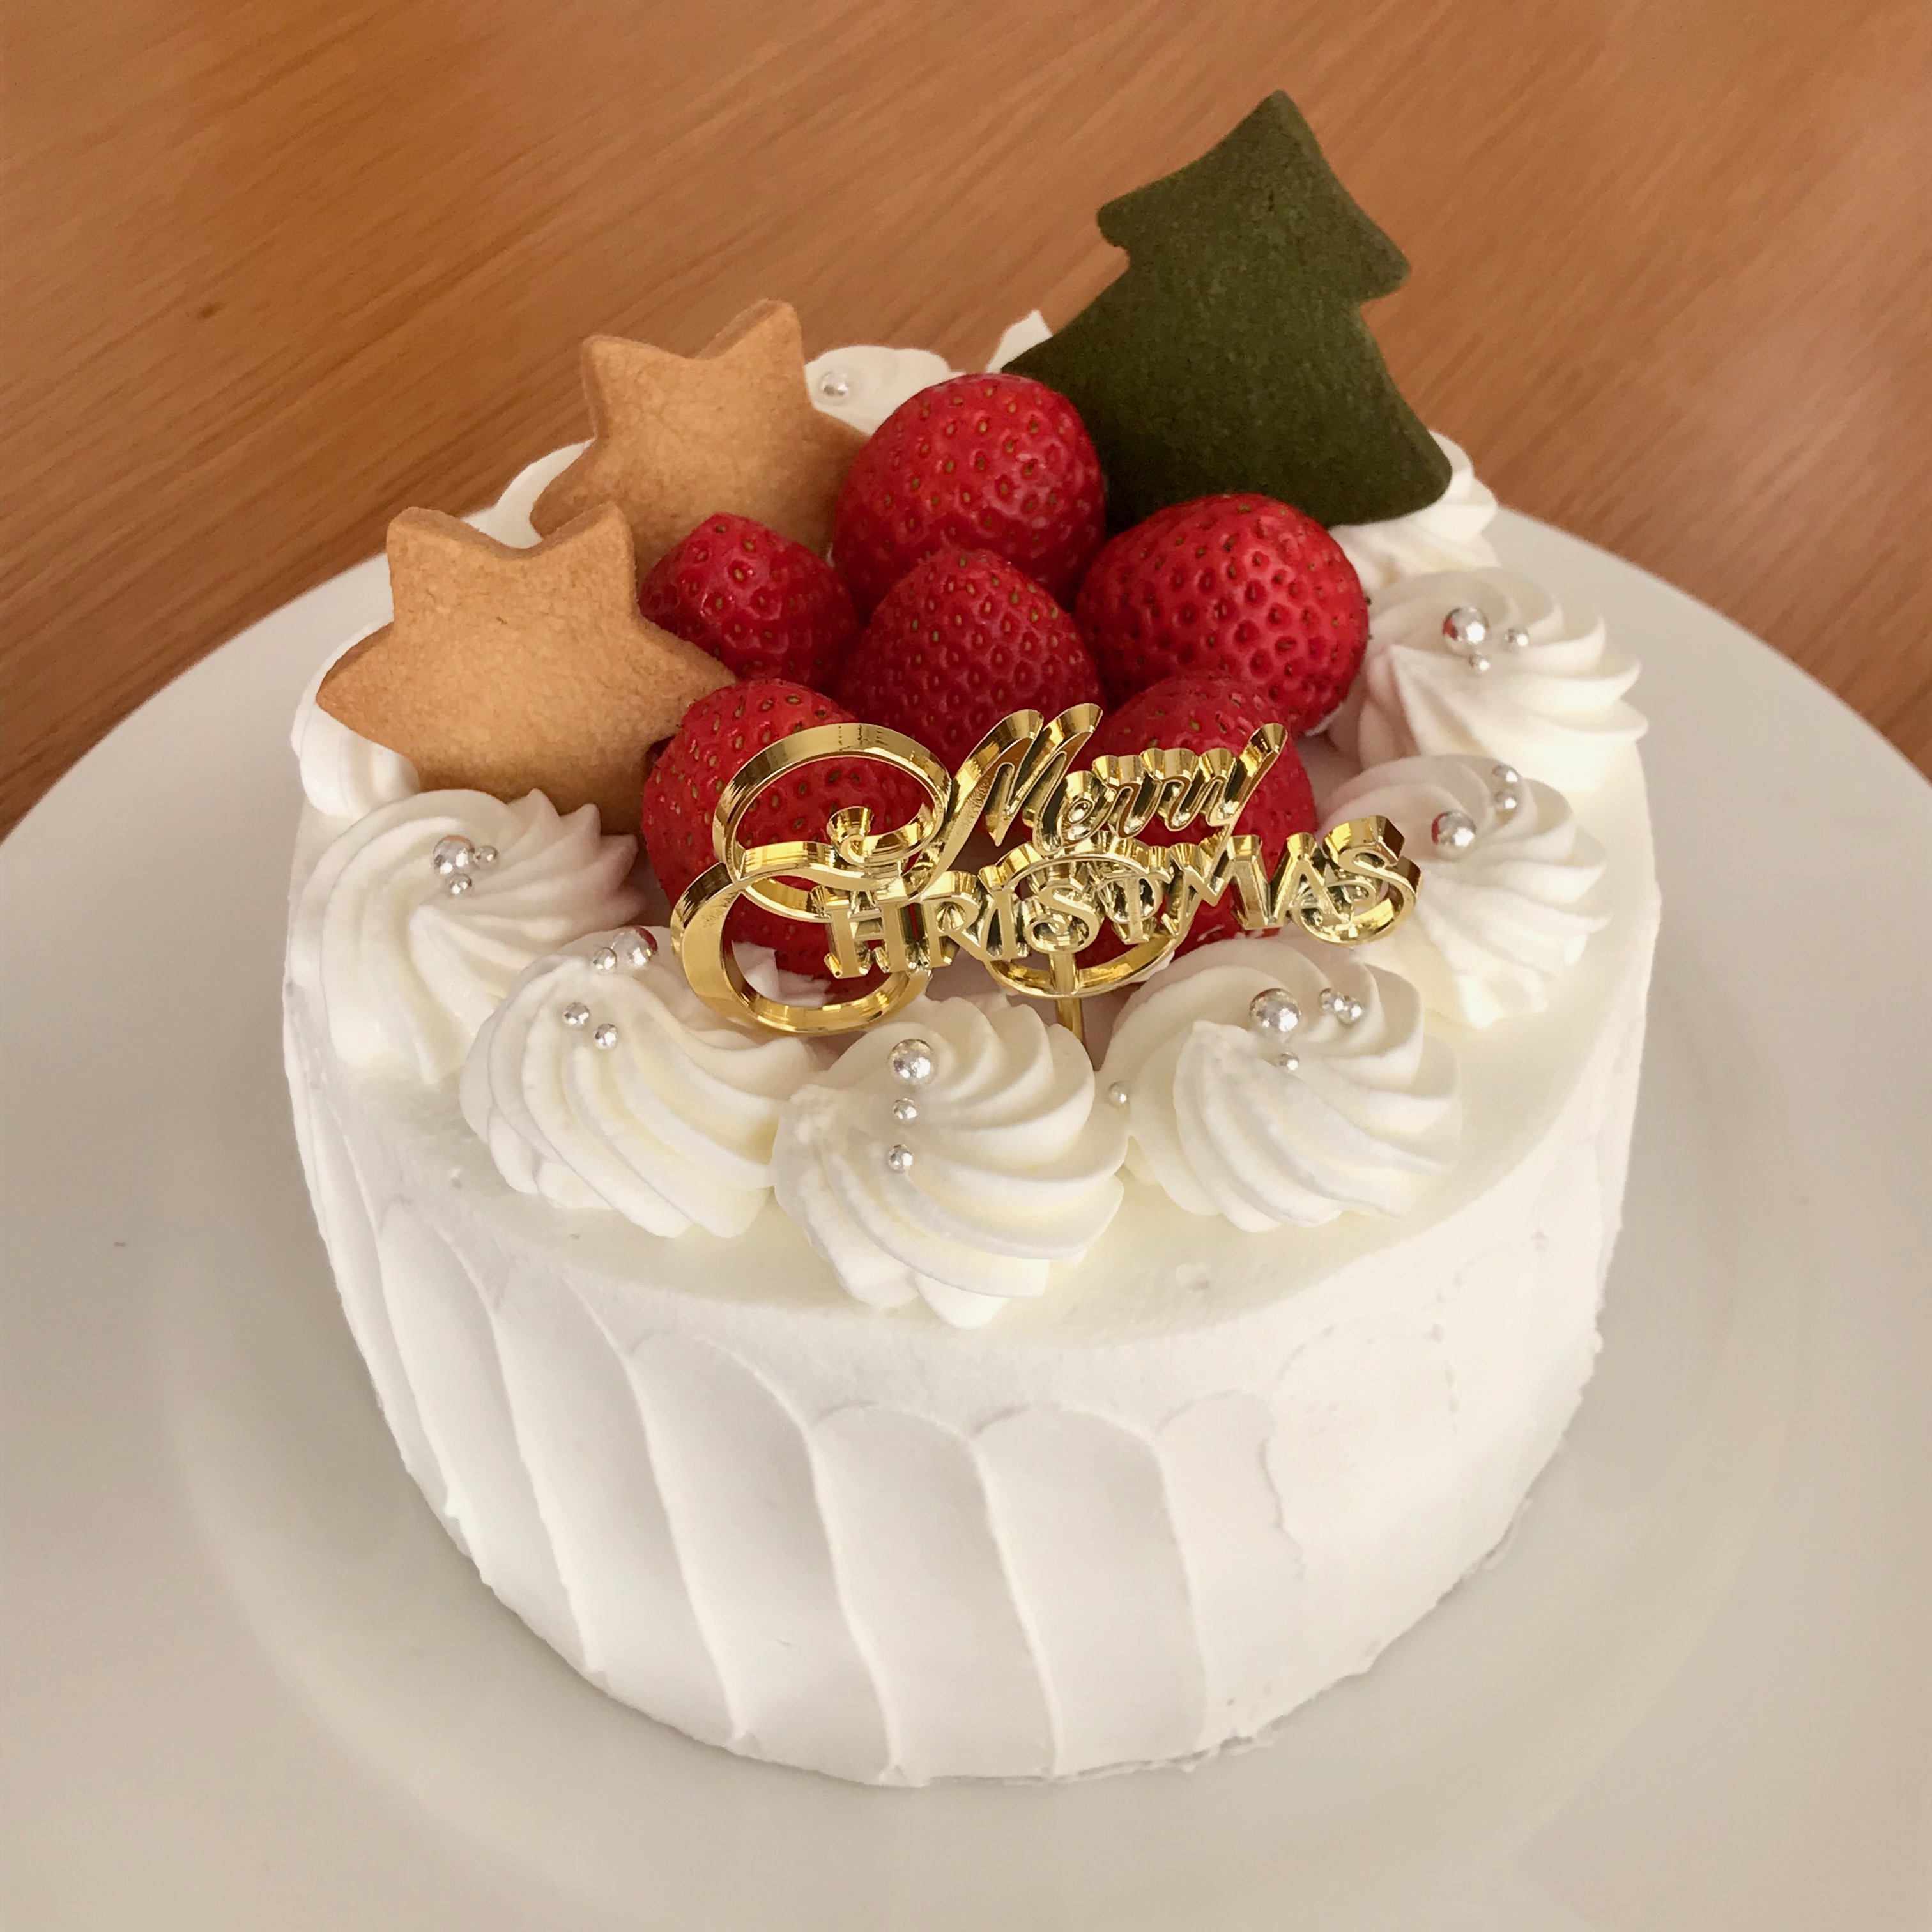 年クリスマスケーキご予約販売開始 橘家ベイクショップ 熊本の焼菓子と珈琲の店